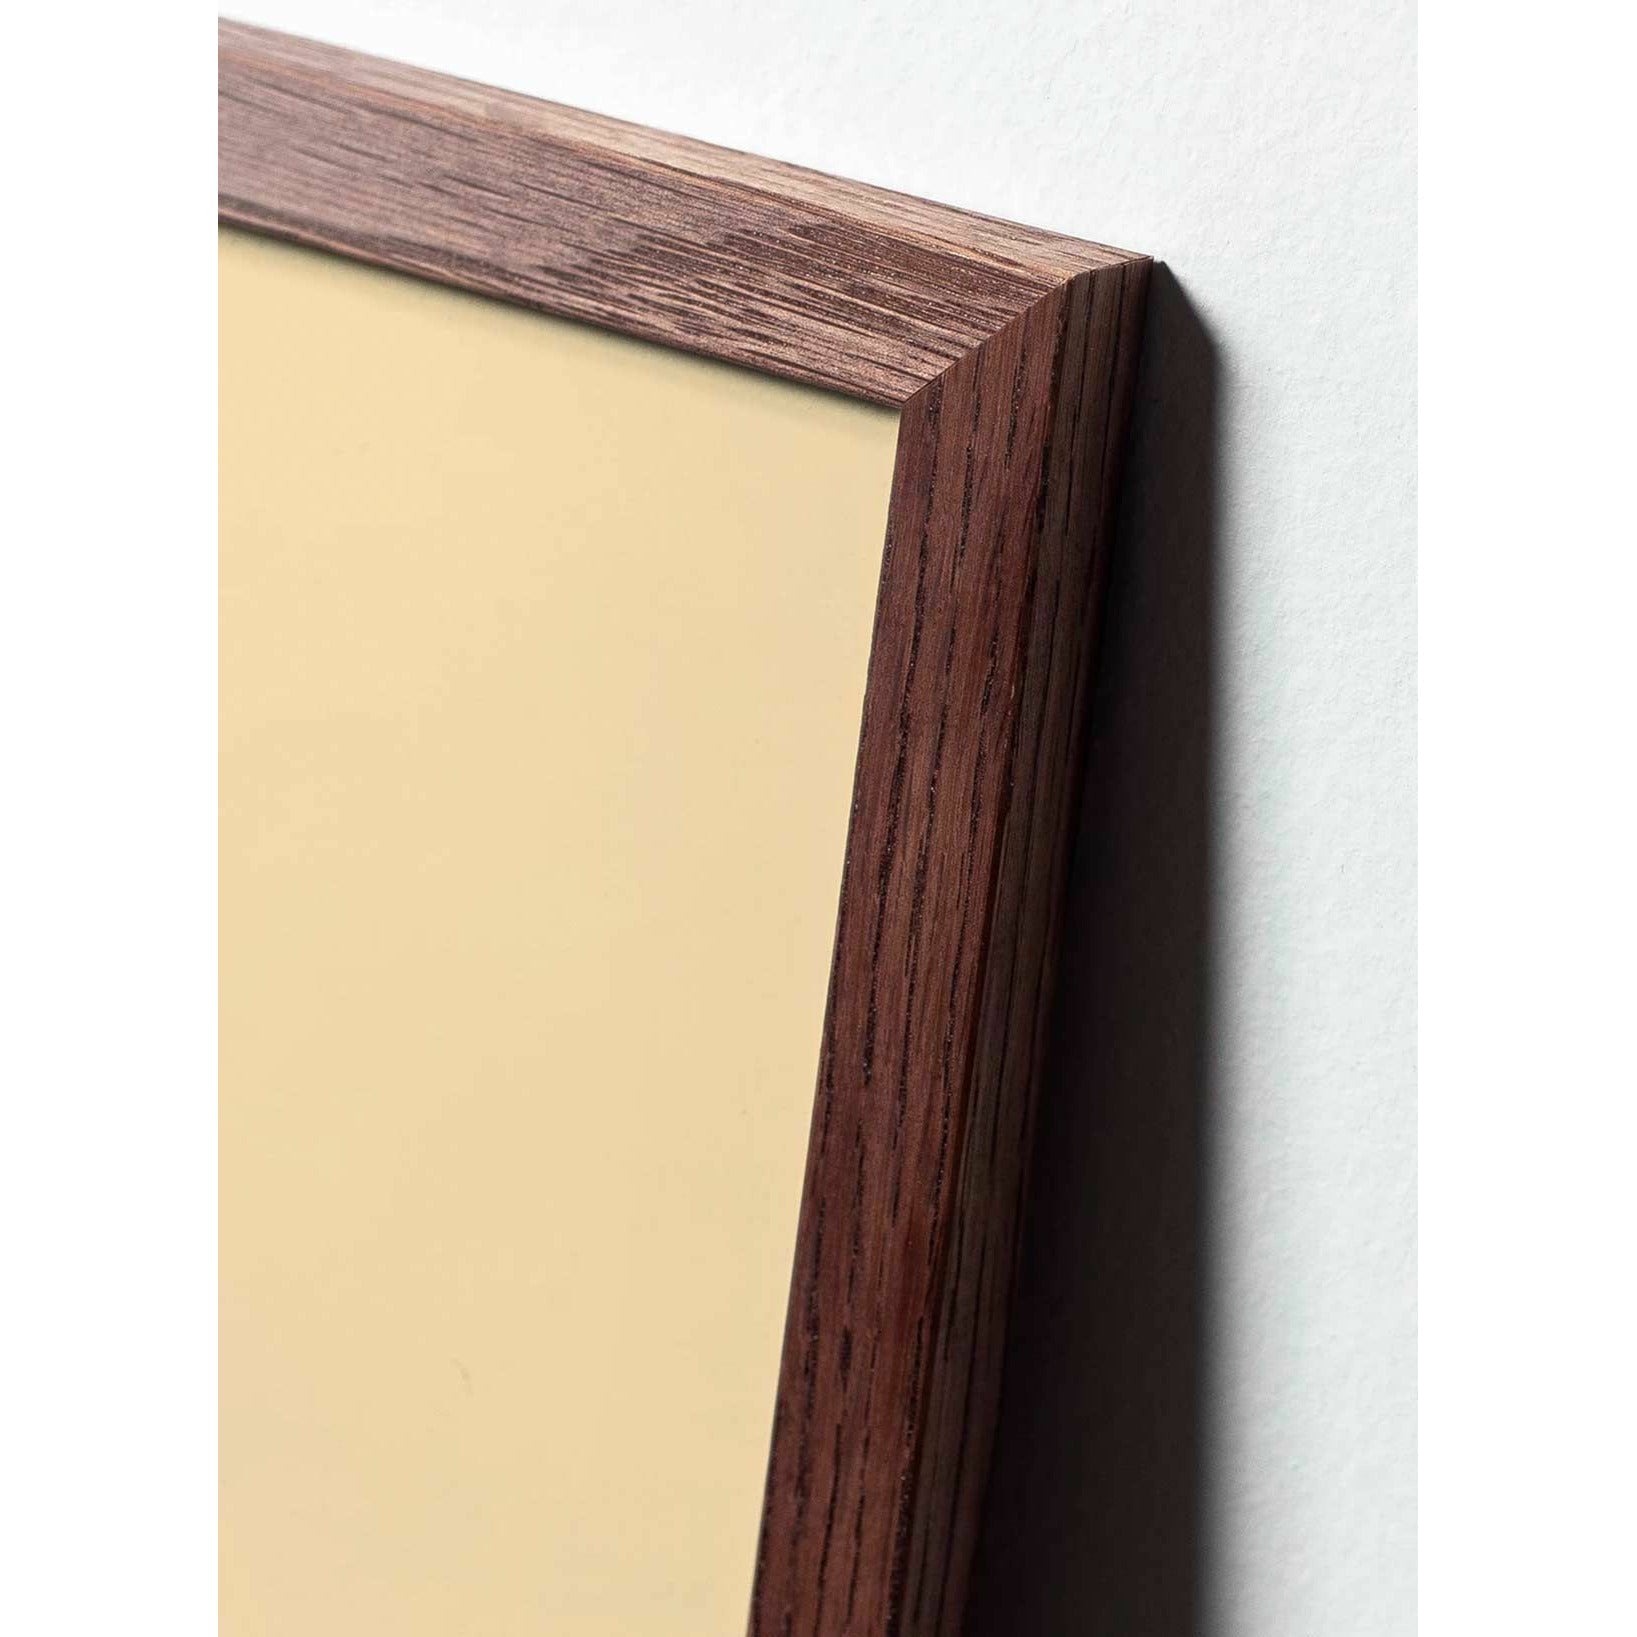 Póster de clip de papel cisne de creación, marco hecho de madera oscura 50x70 cm, fondo rosa